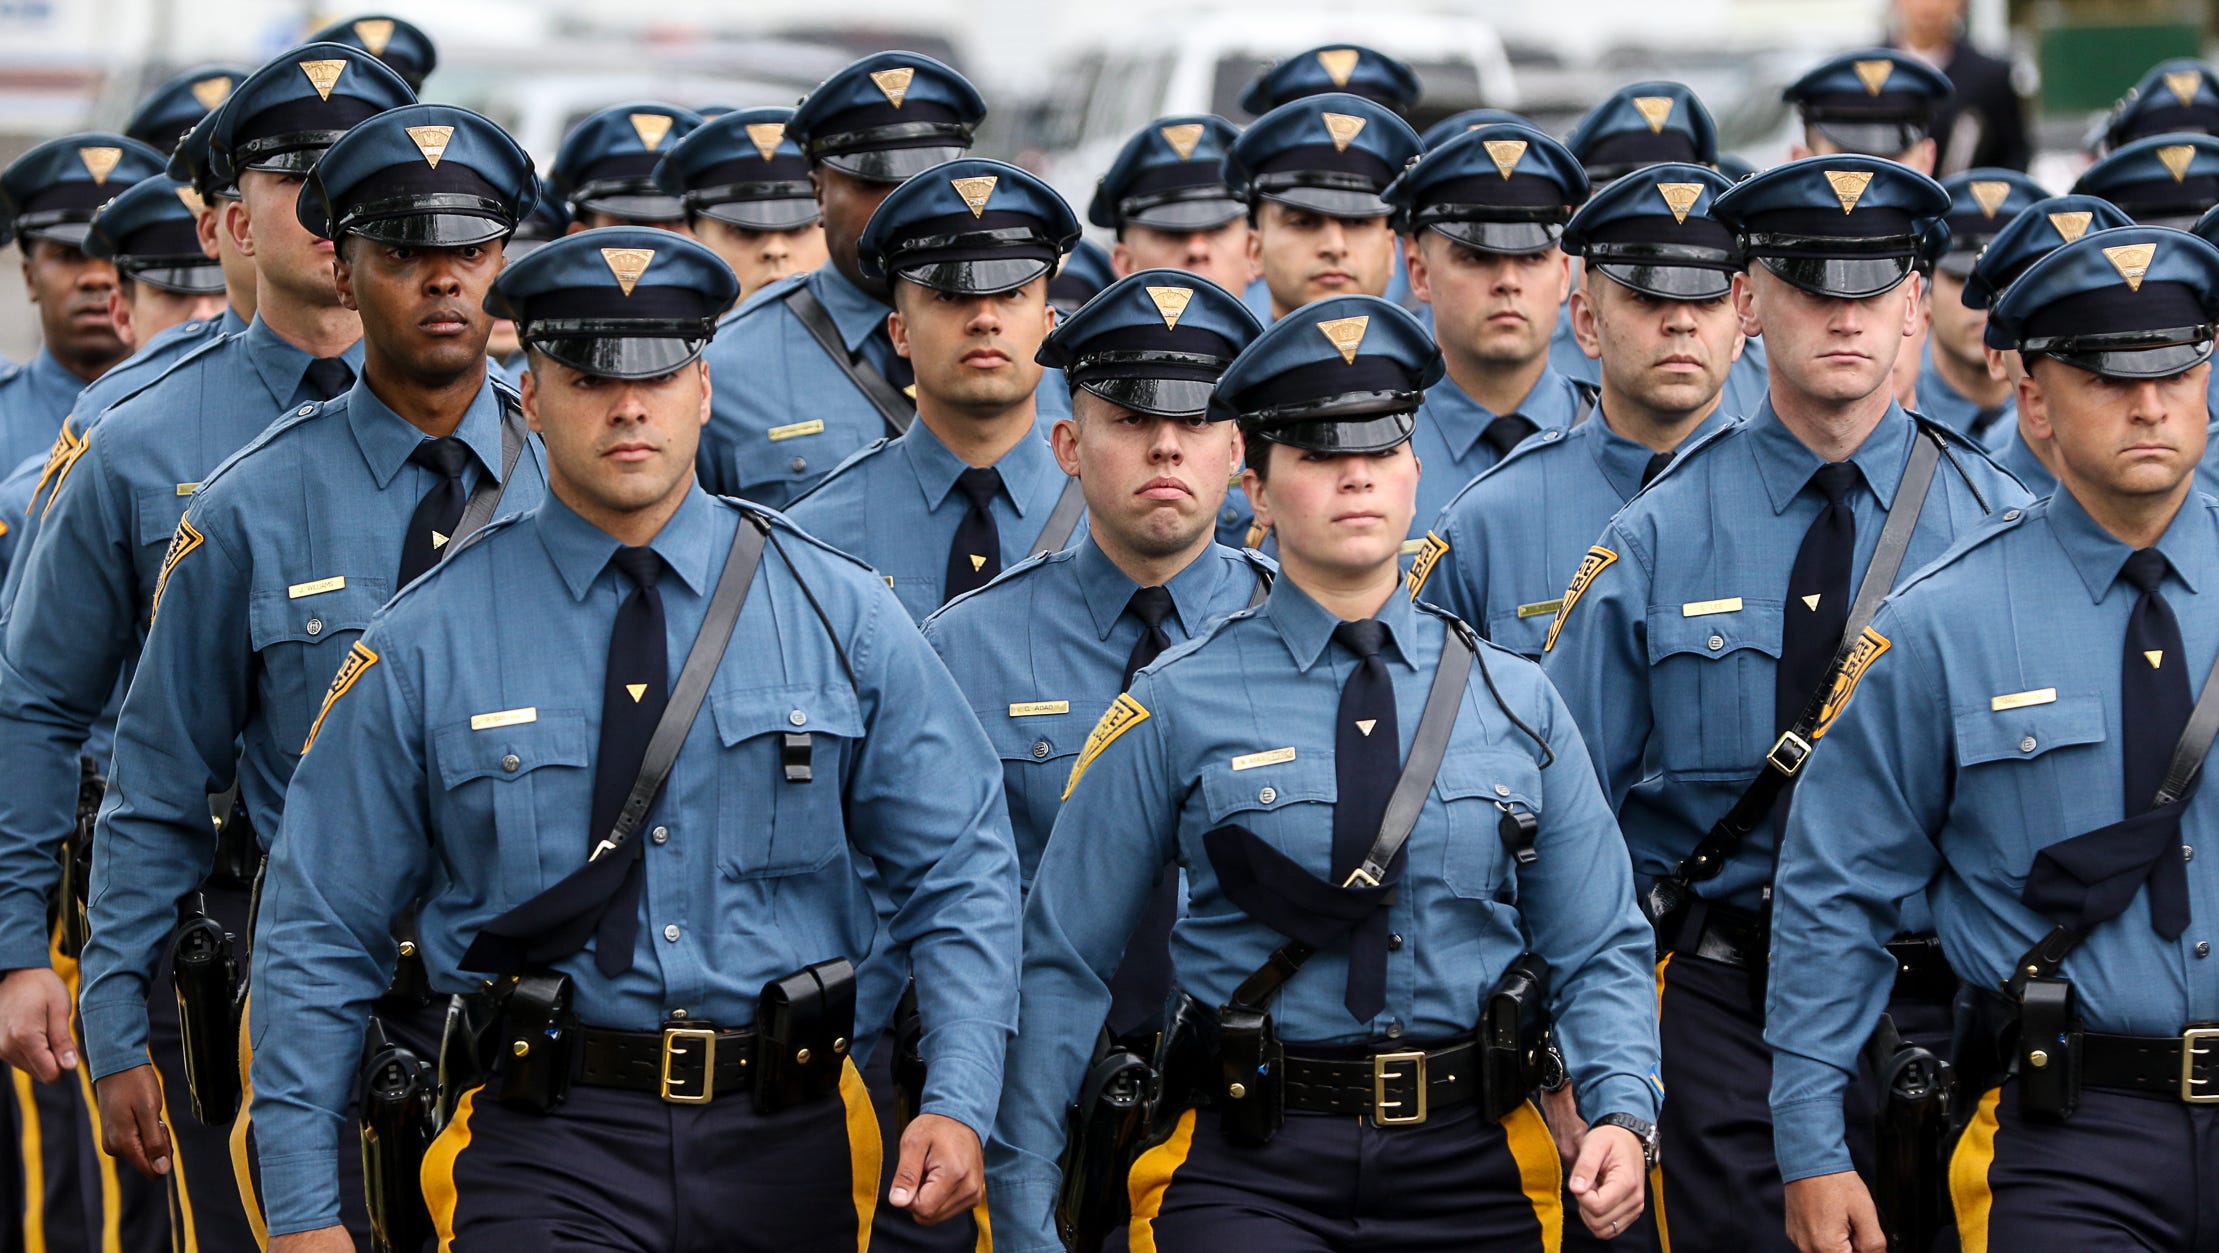 Самого главного полицейского. Нью-джерси.форма полиции. Полиция штата Нью джерси. New Jersey State Police uniform. Полицейская форма.